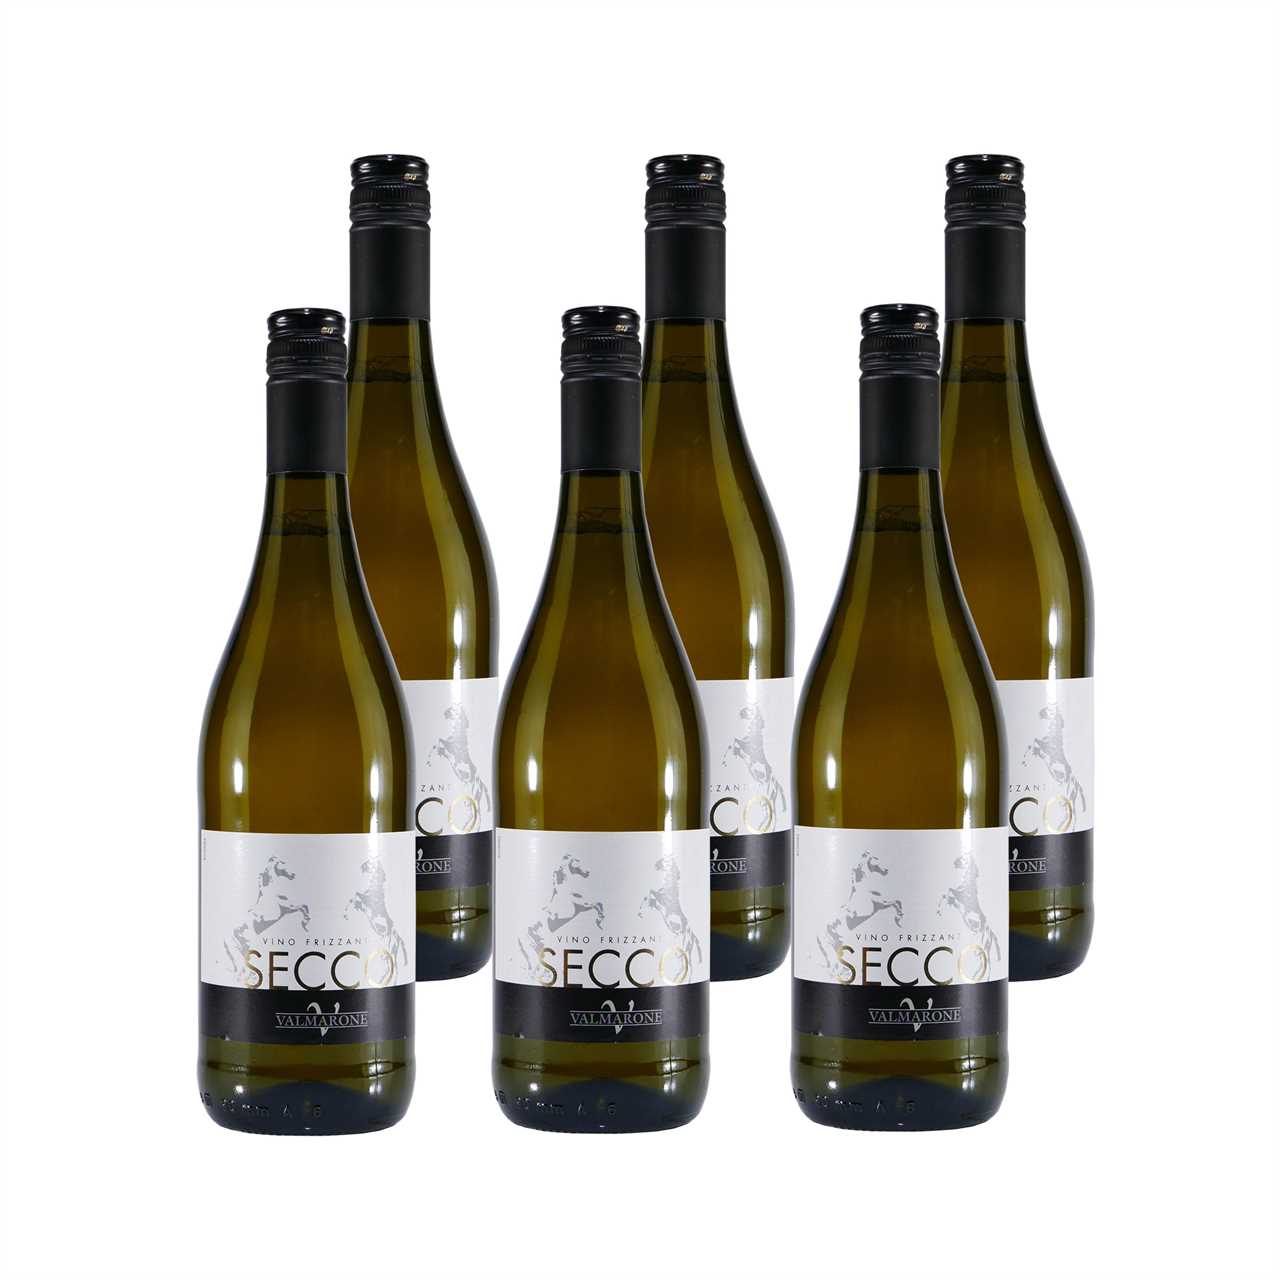 Valmarone Bianco Vino Frizzante - Secco trocken (6 x 0,75L)